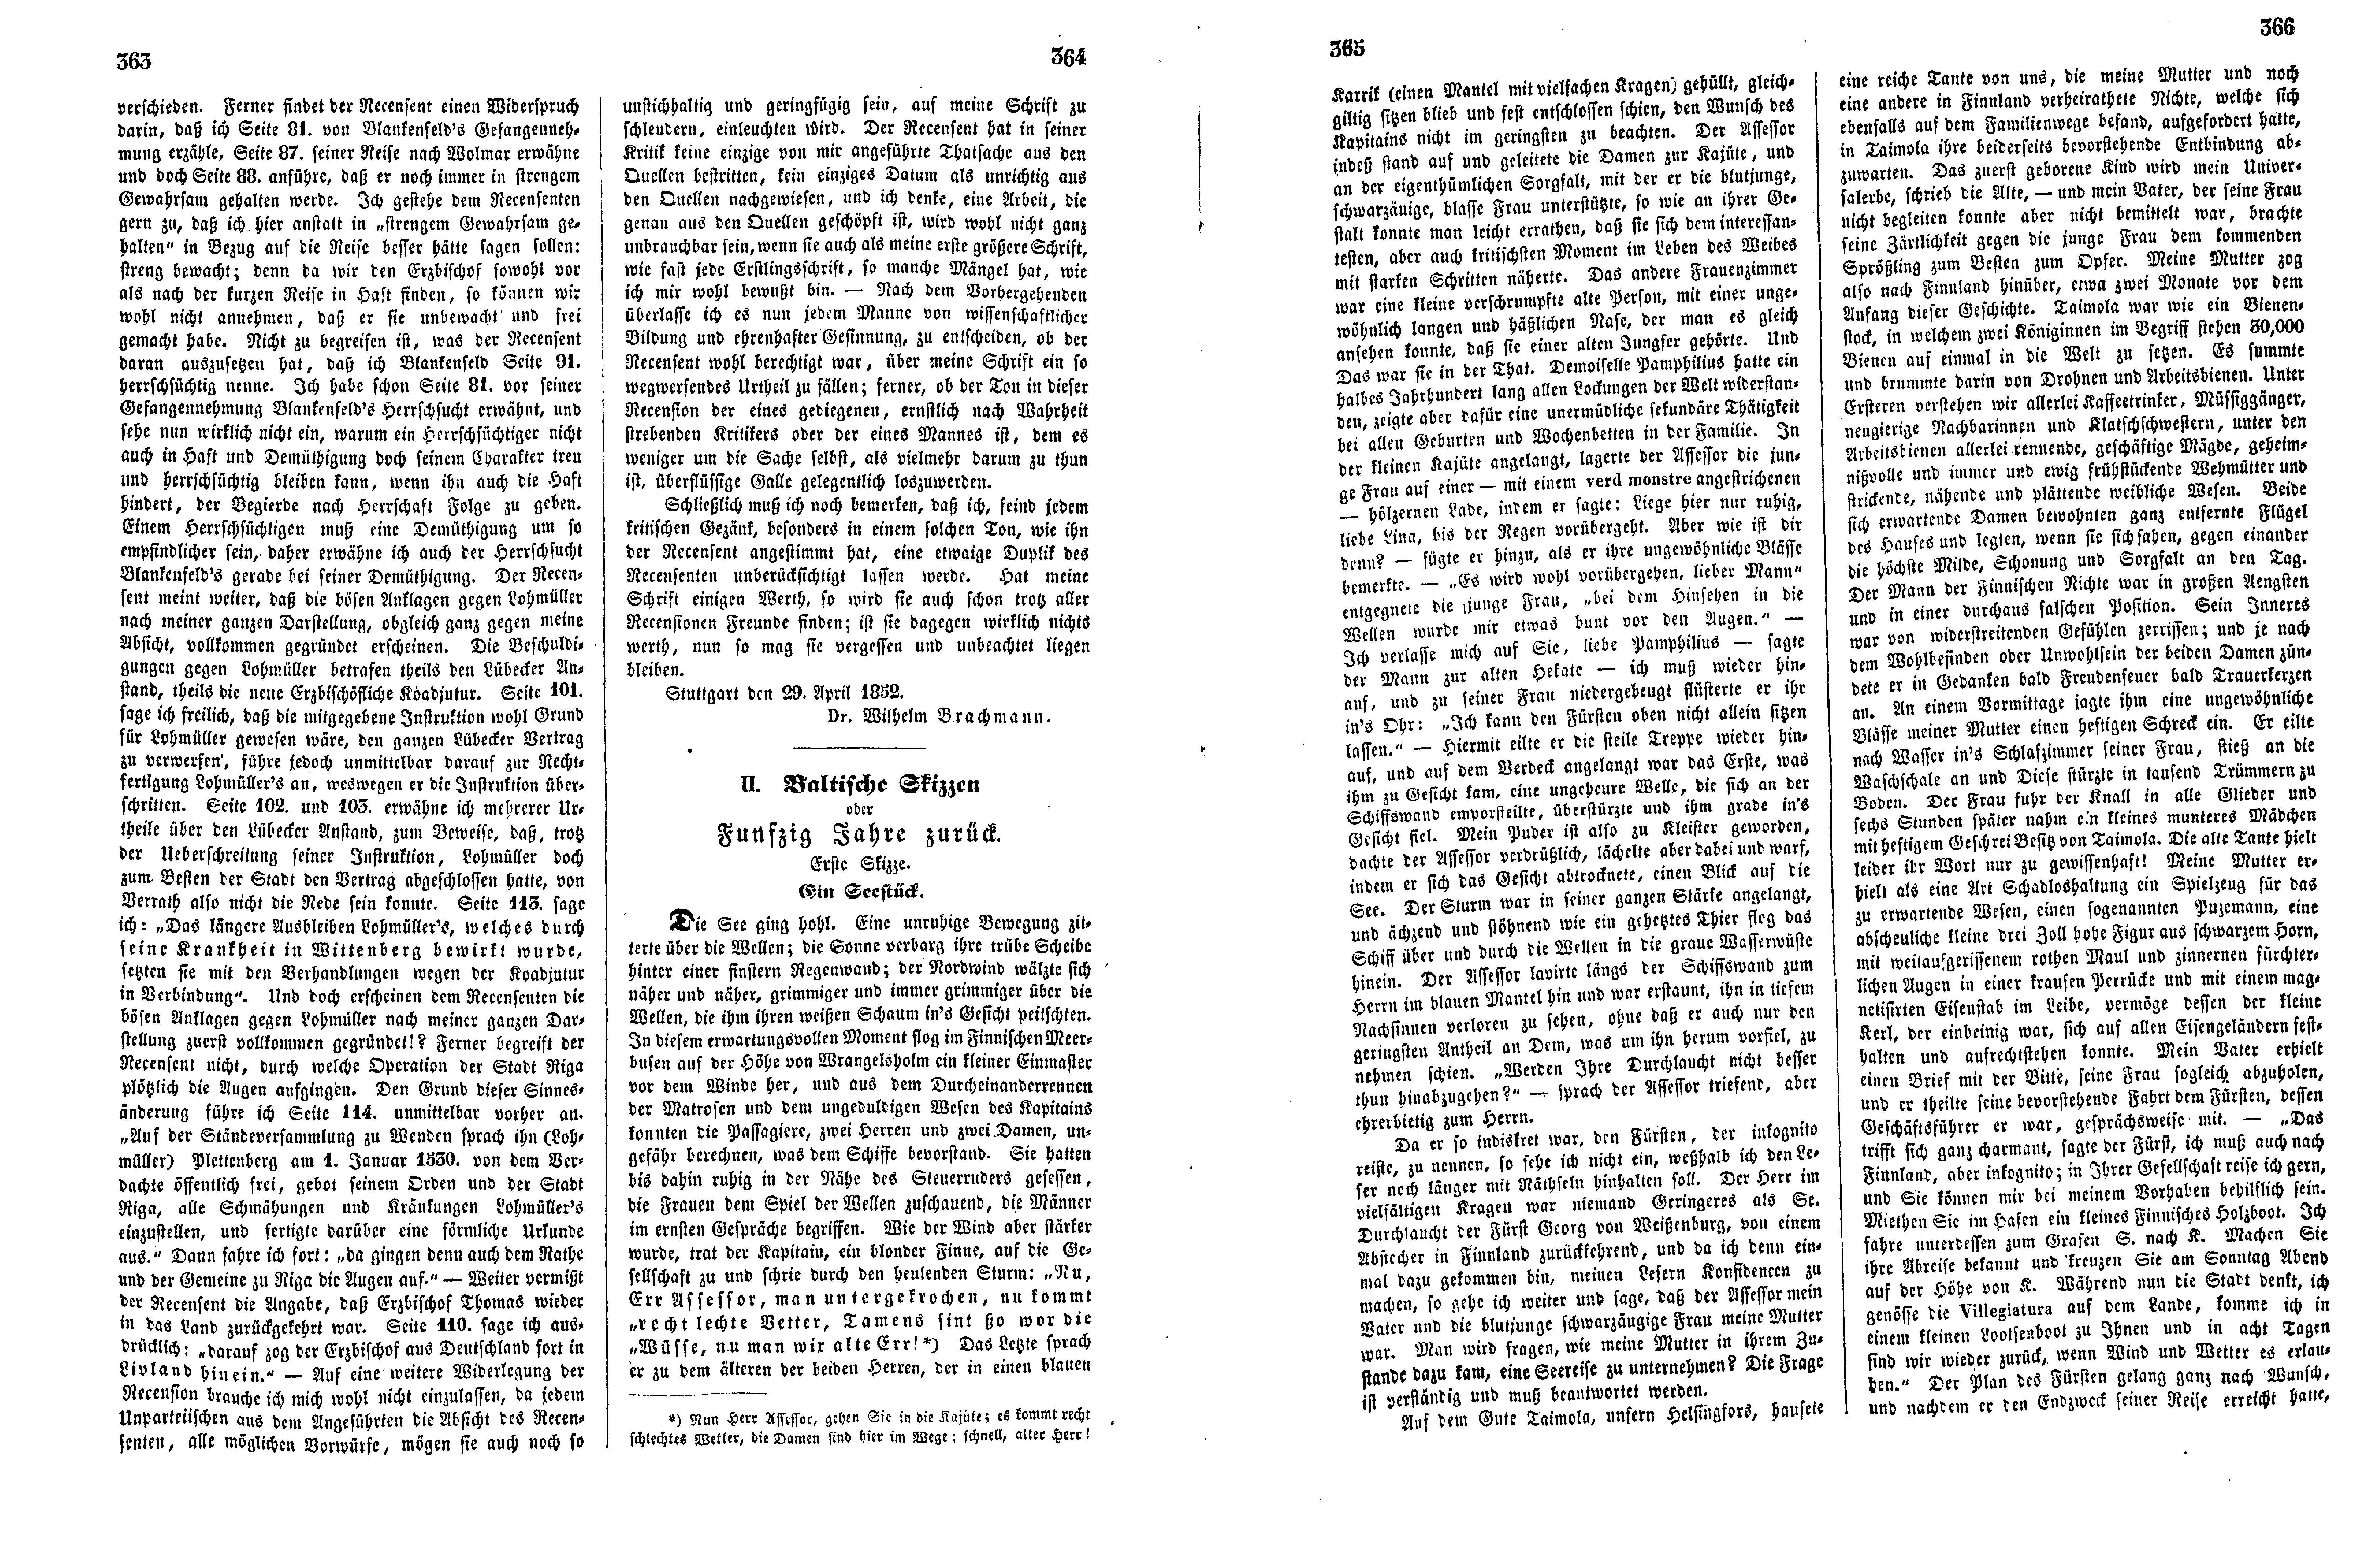 Baltische Skizzen oder Funfzig Jahre zurück (1852) | 1. (363-366) Main body of text